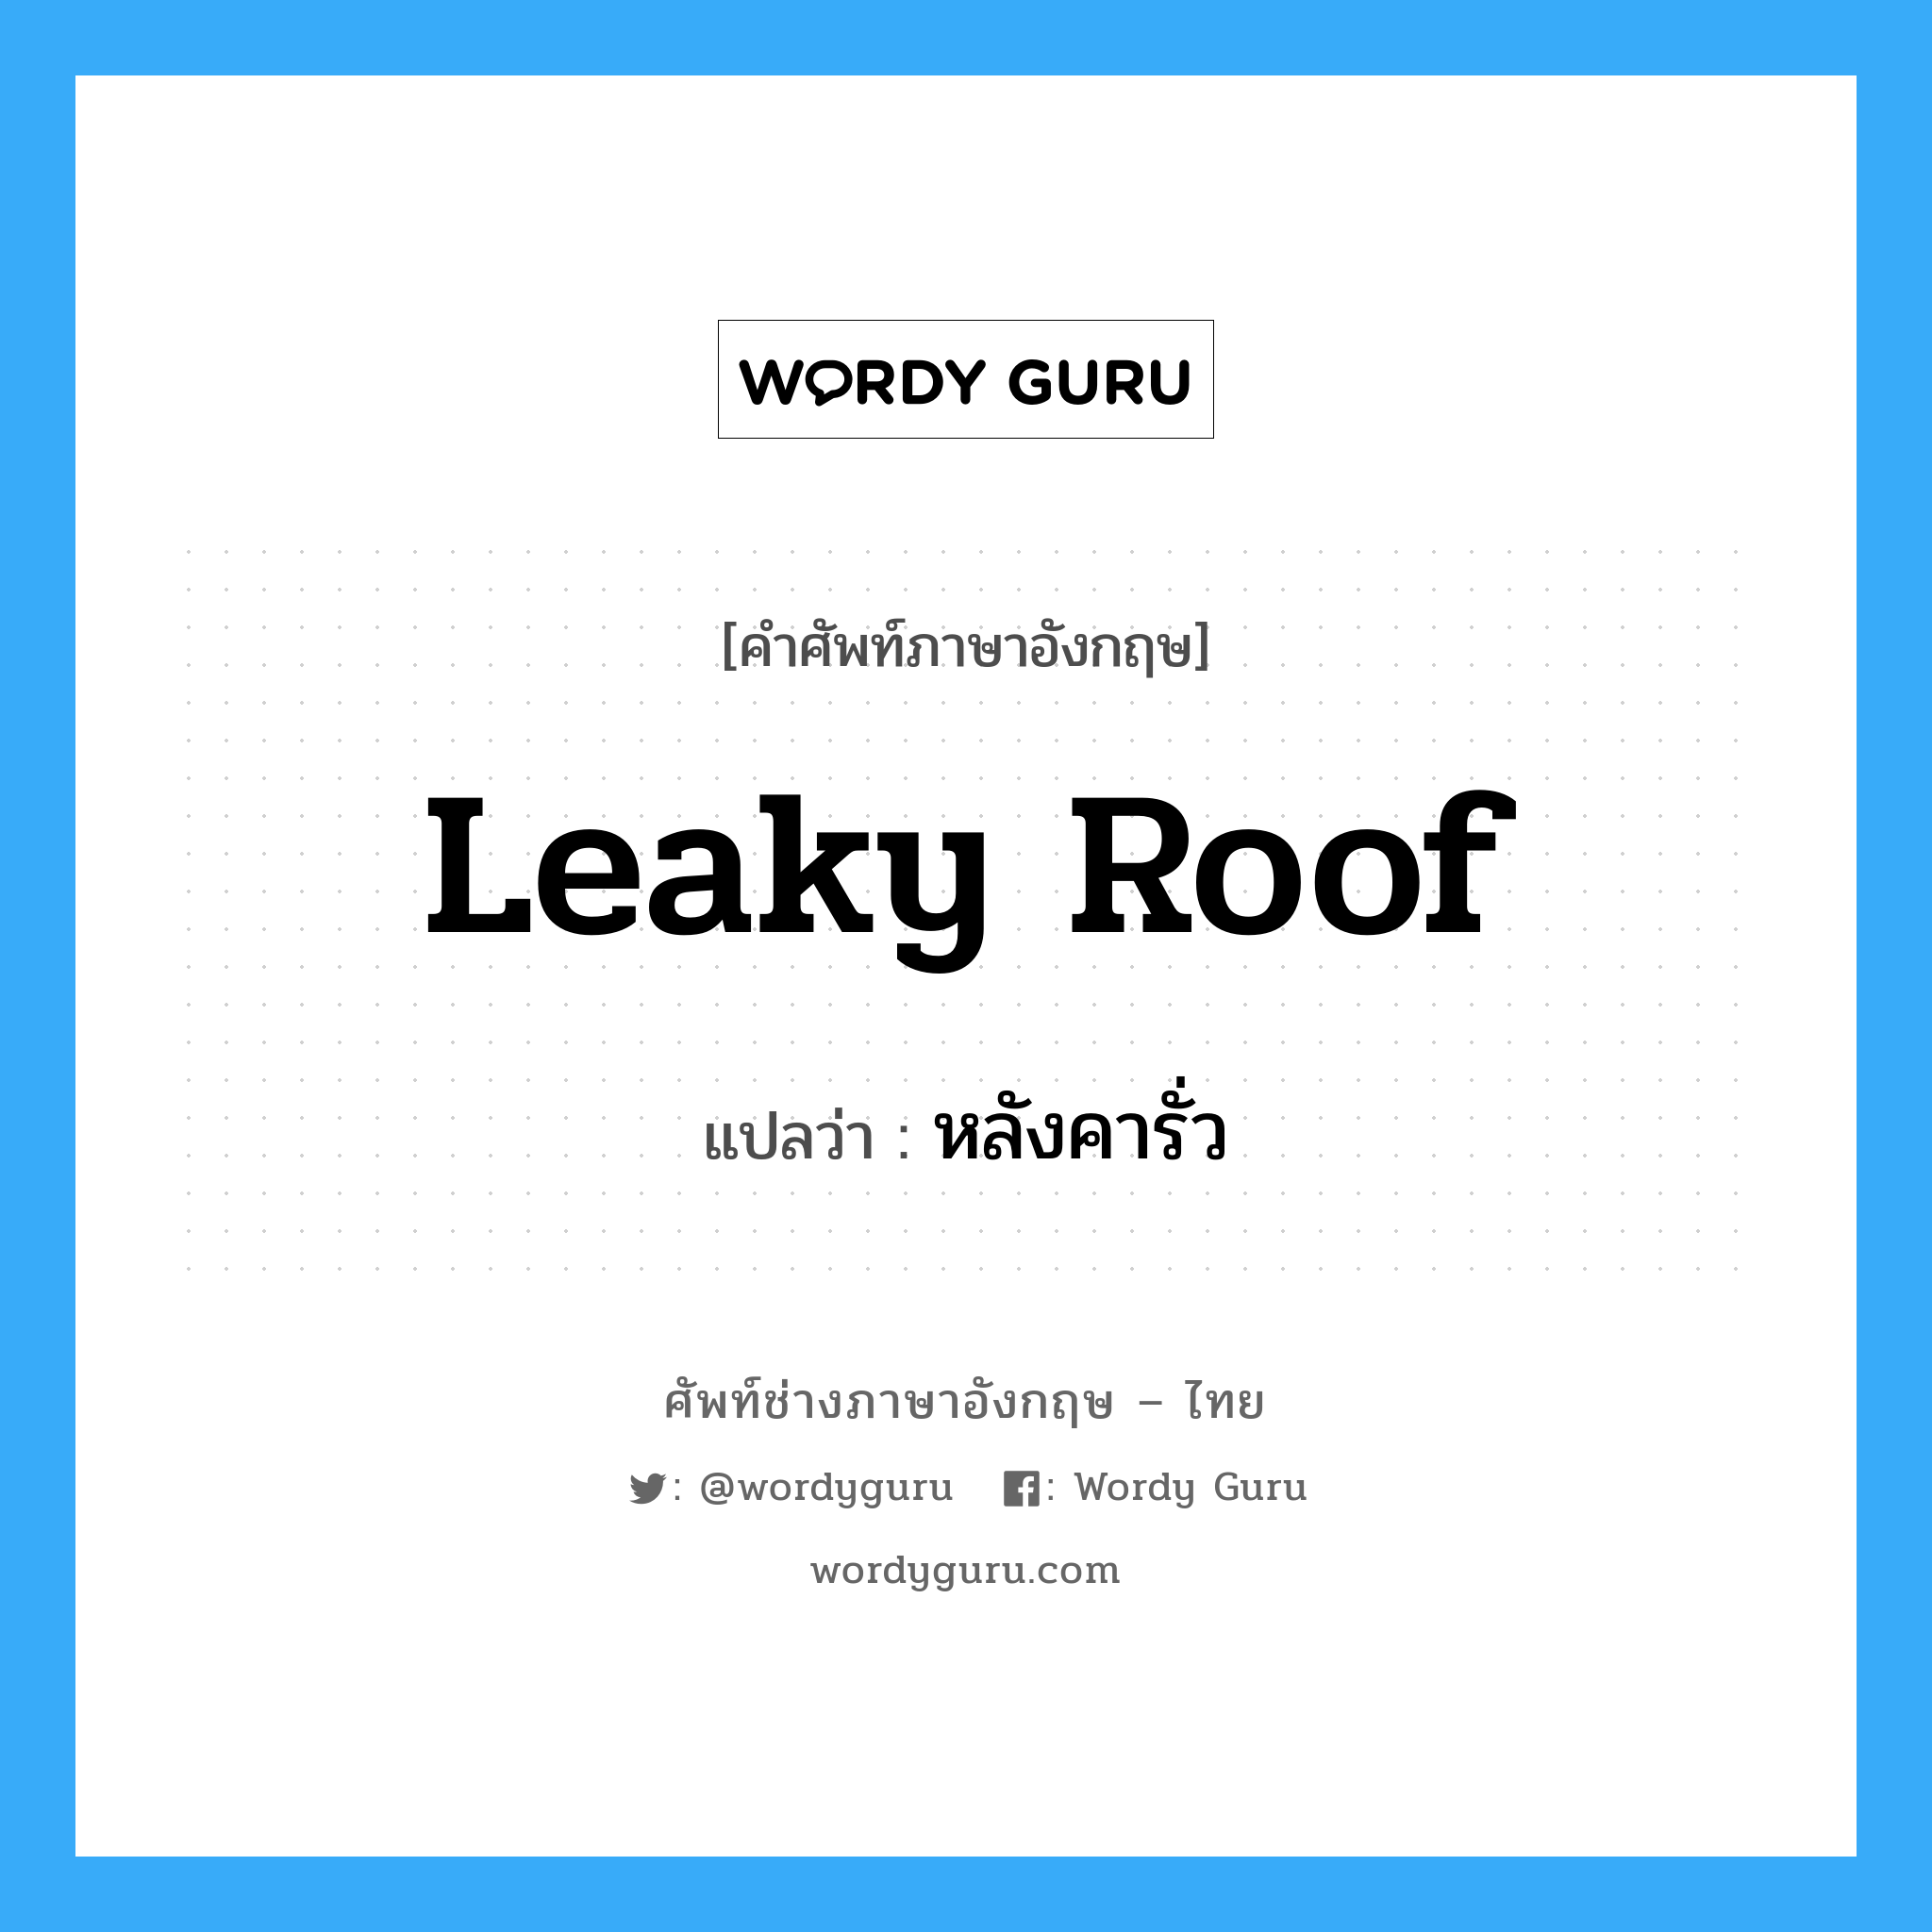 หลังคารั่ว ภาษาอังกฤษ?, คำศัพท์ช่างภาษาอังกฤษ - ไทย หลังคารั่ว คำศัพท์ภาษาอังกฤษ หลังคารั่ว แปลว่า leaky roof